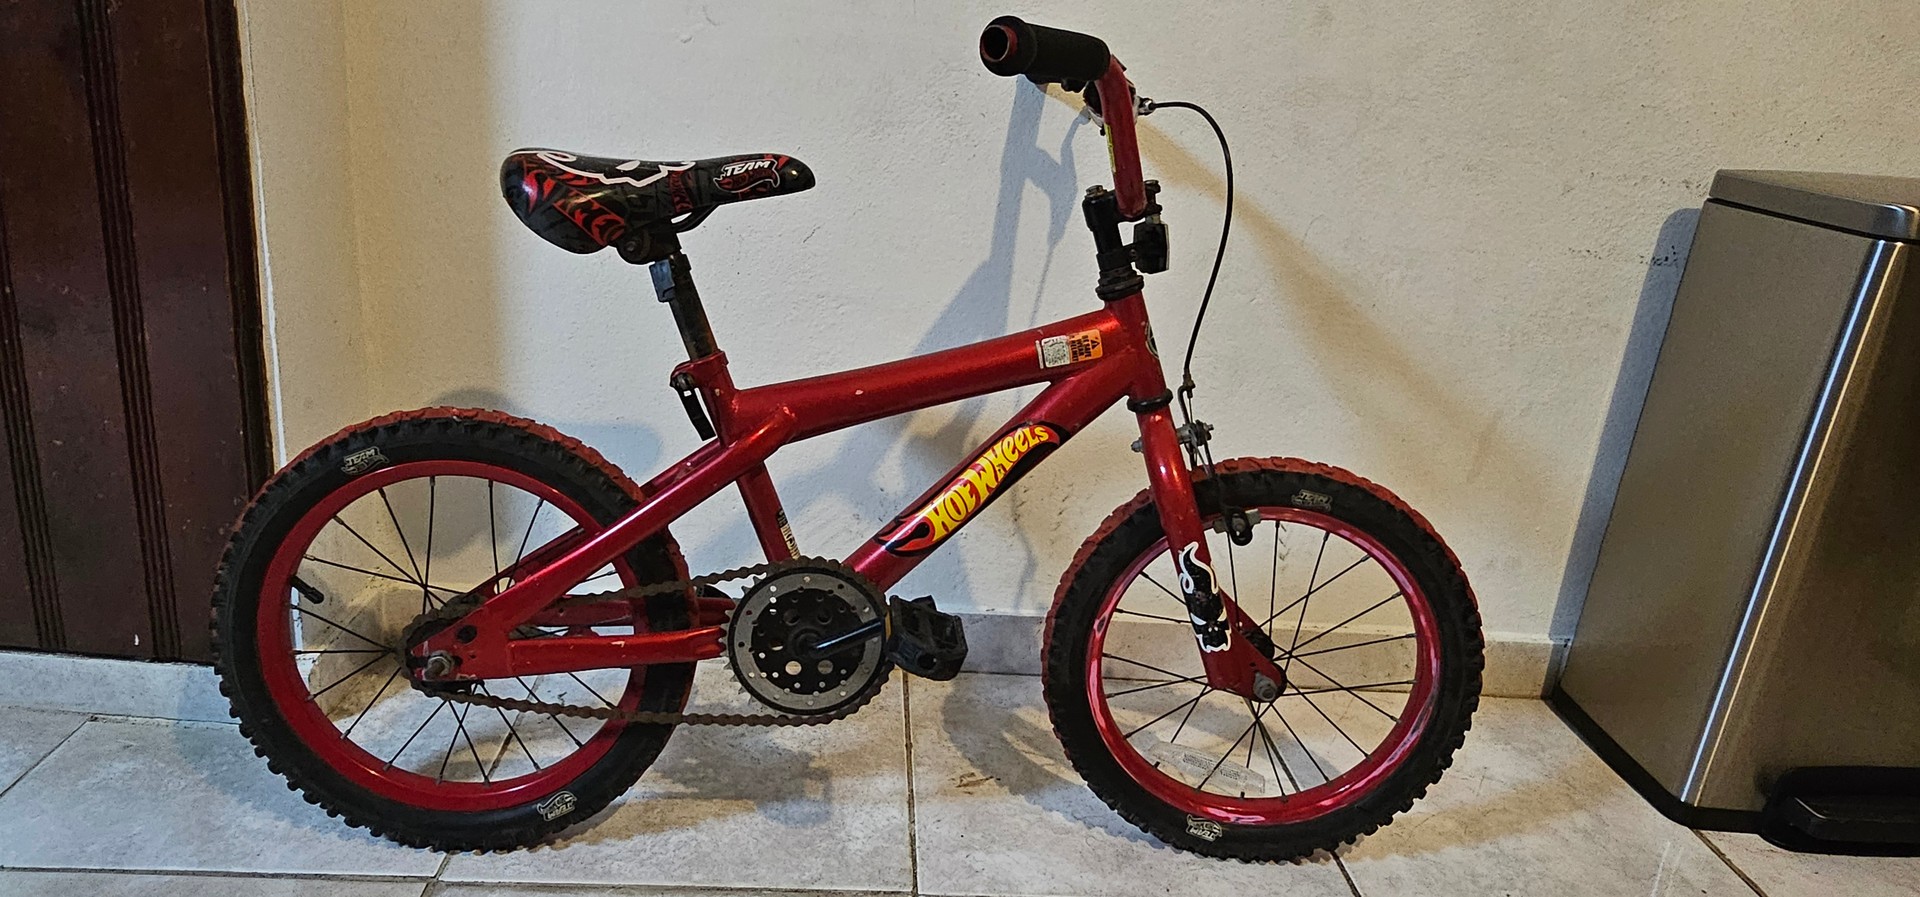 bicicletas y accesorios - Bicicleta Hot Wheels  Aro 12 2